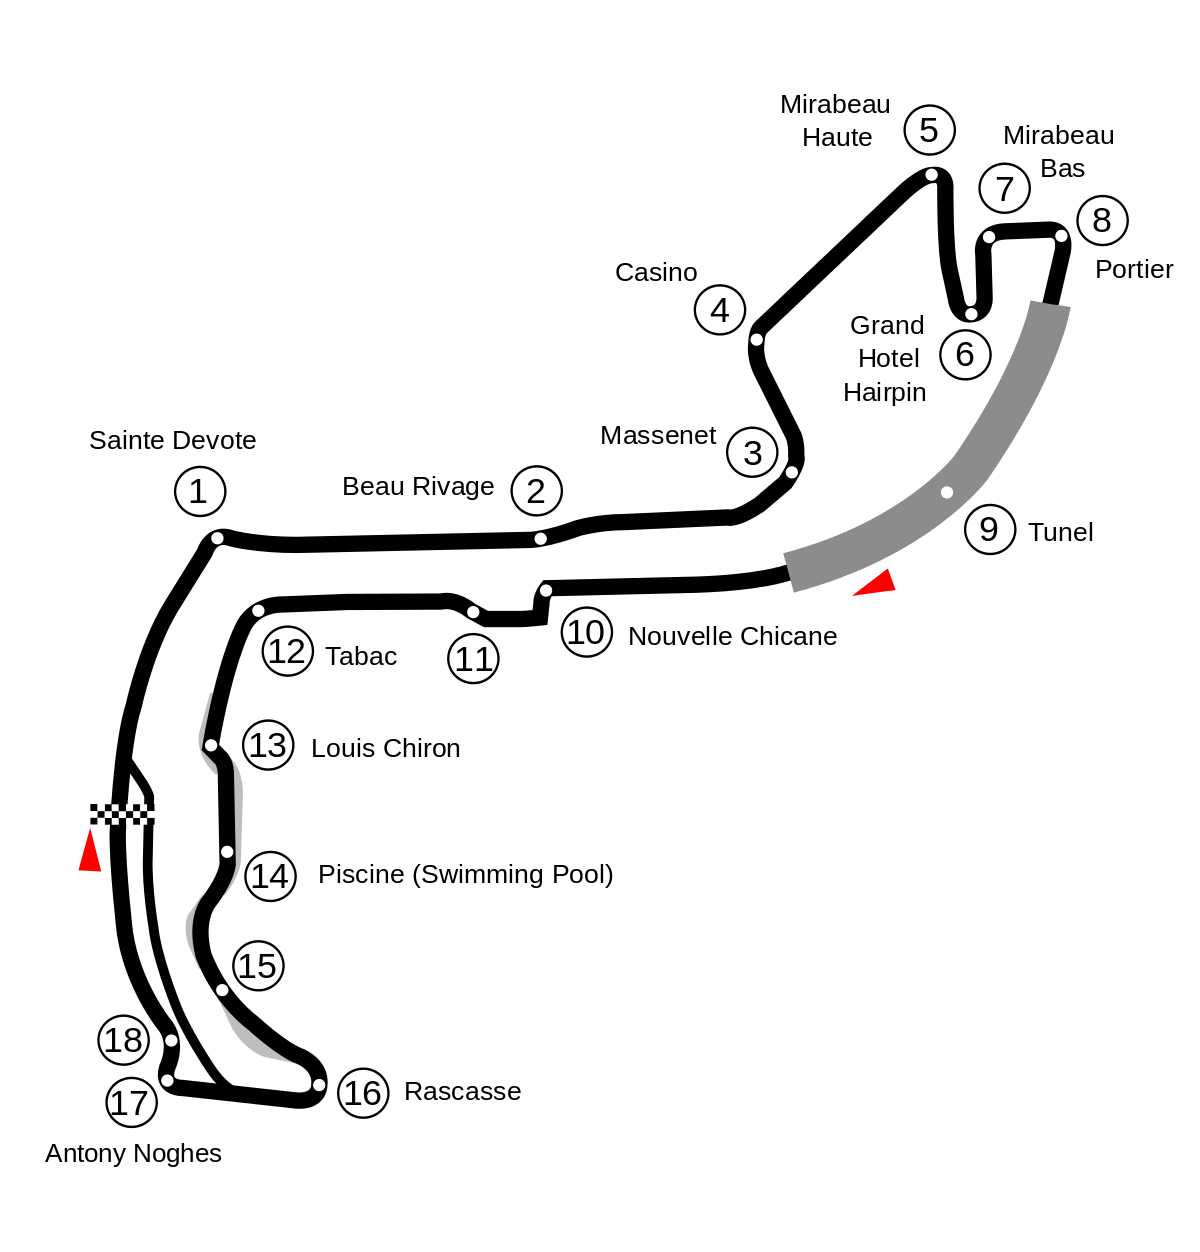 2001 Monaco Grand Prix - Wikipedia